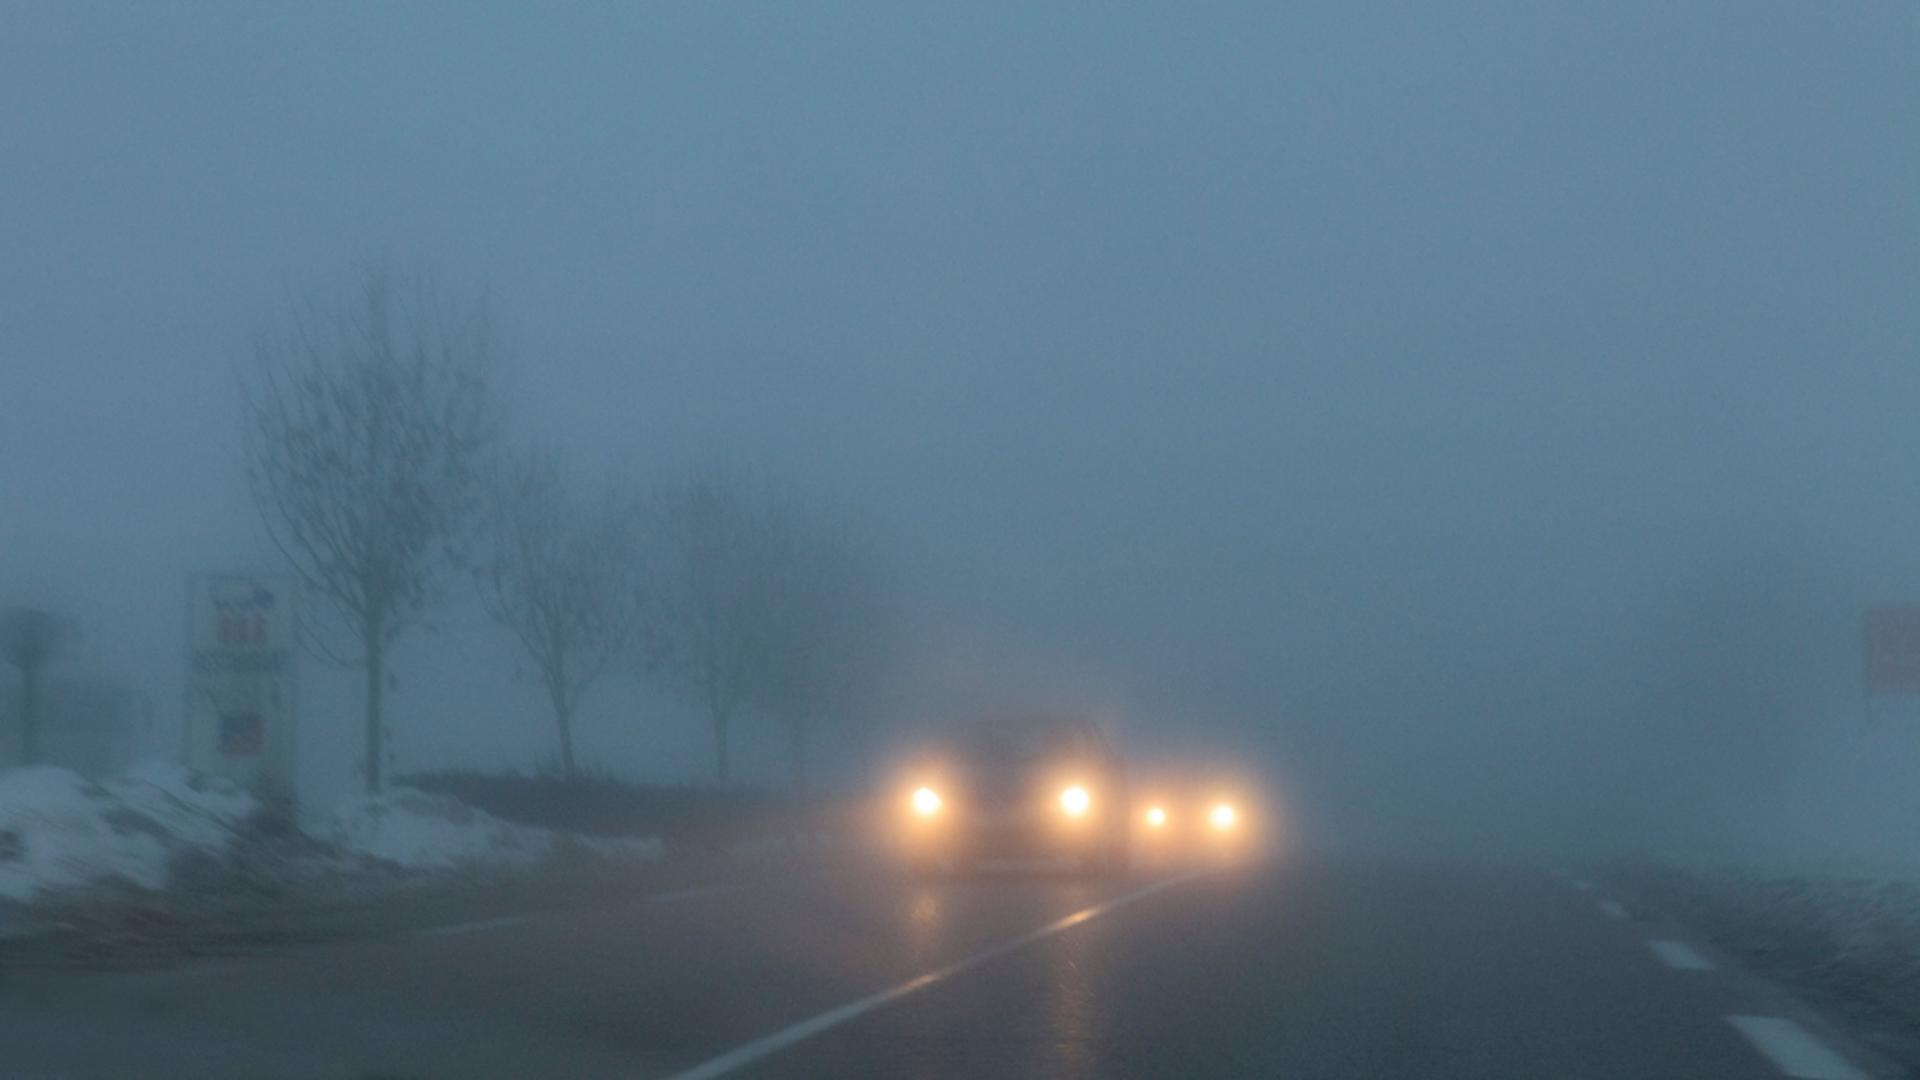 Conducătorii auto trebuie ca, pe timp de ceaţă densă, să reducă viteza